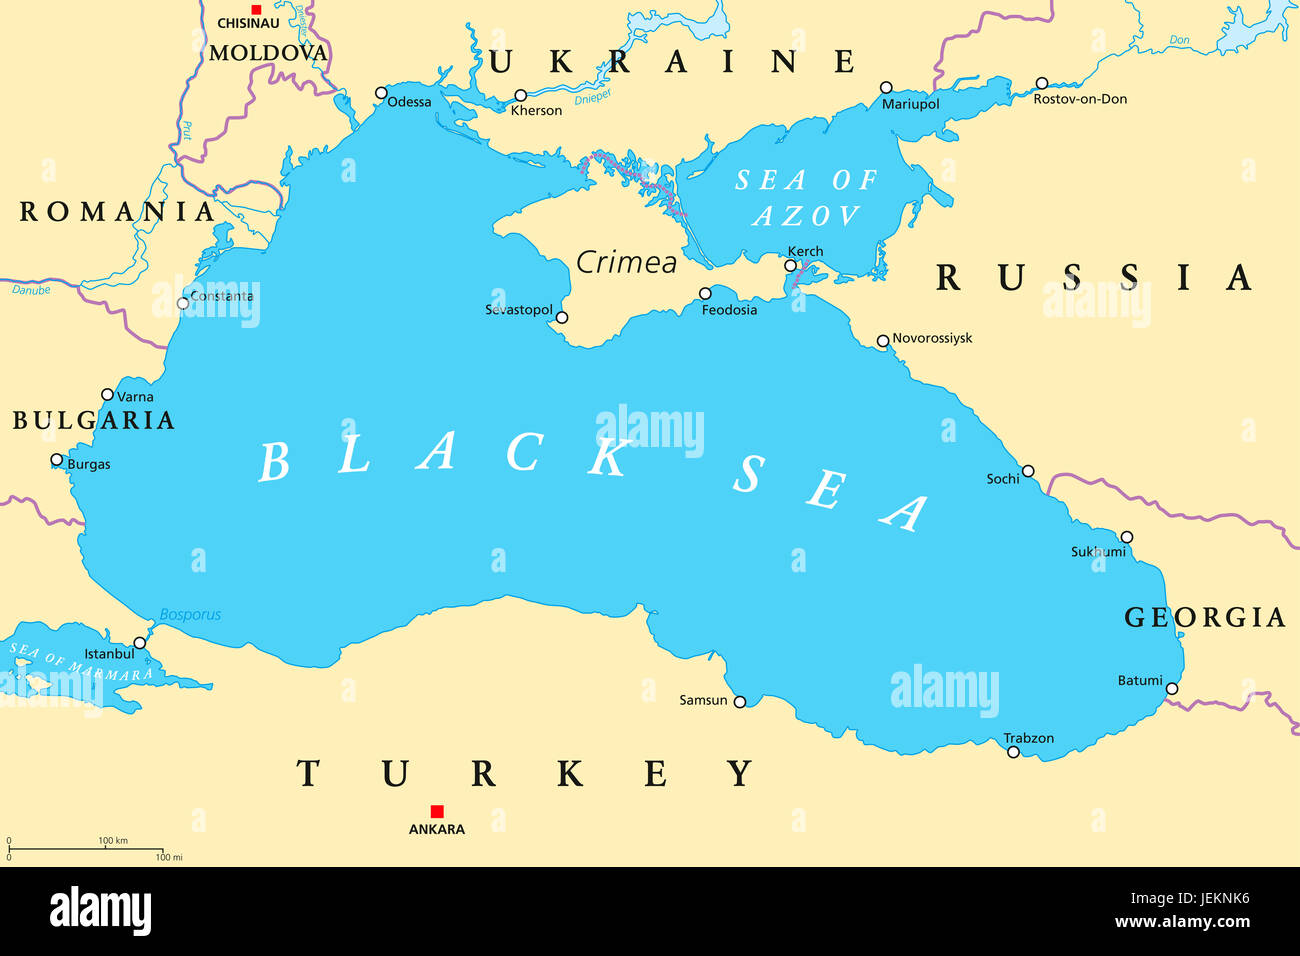 Sea Of Azov World Map